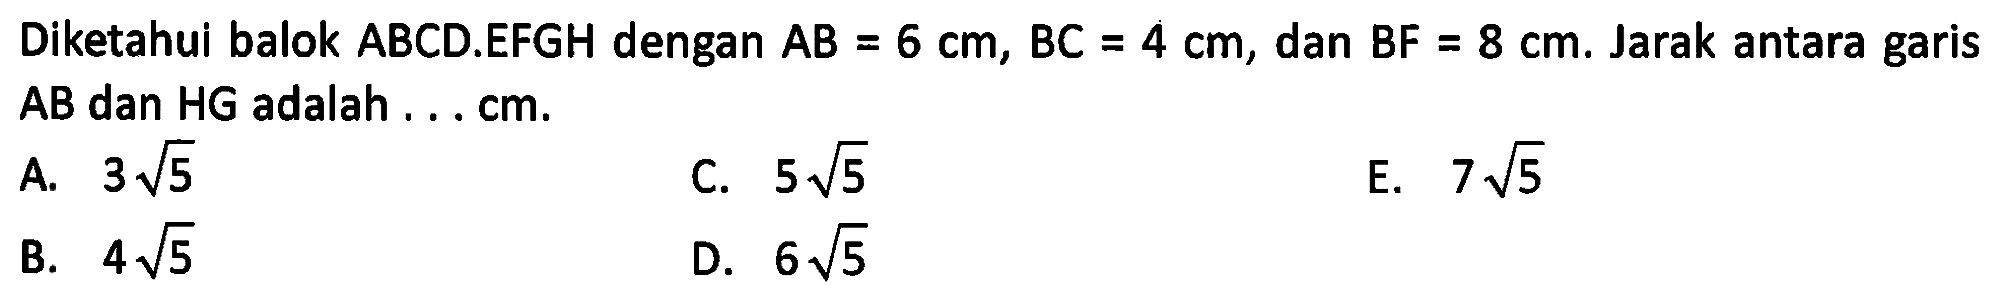 Diketahui balok ABCD.EFGH dengan AB = 6 cm, BC = 4 cm, dan BF = 8 cm. Jarak antara garis AB dan HG adalah ... cm.